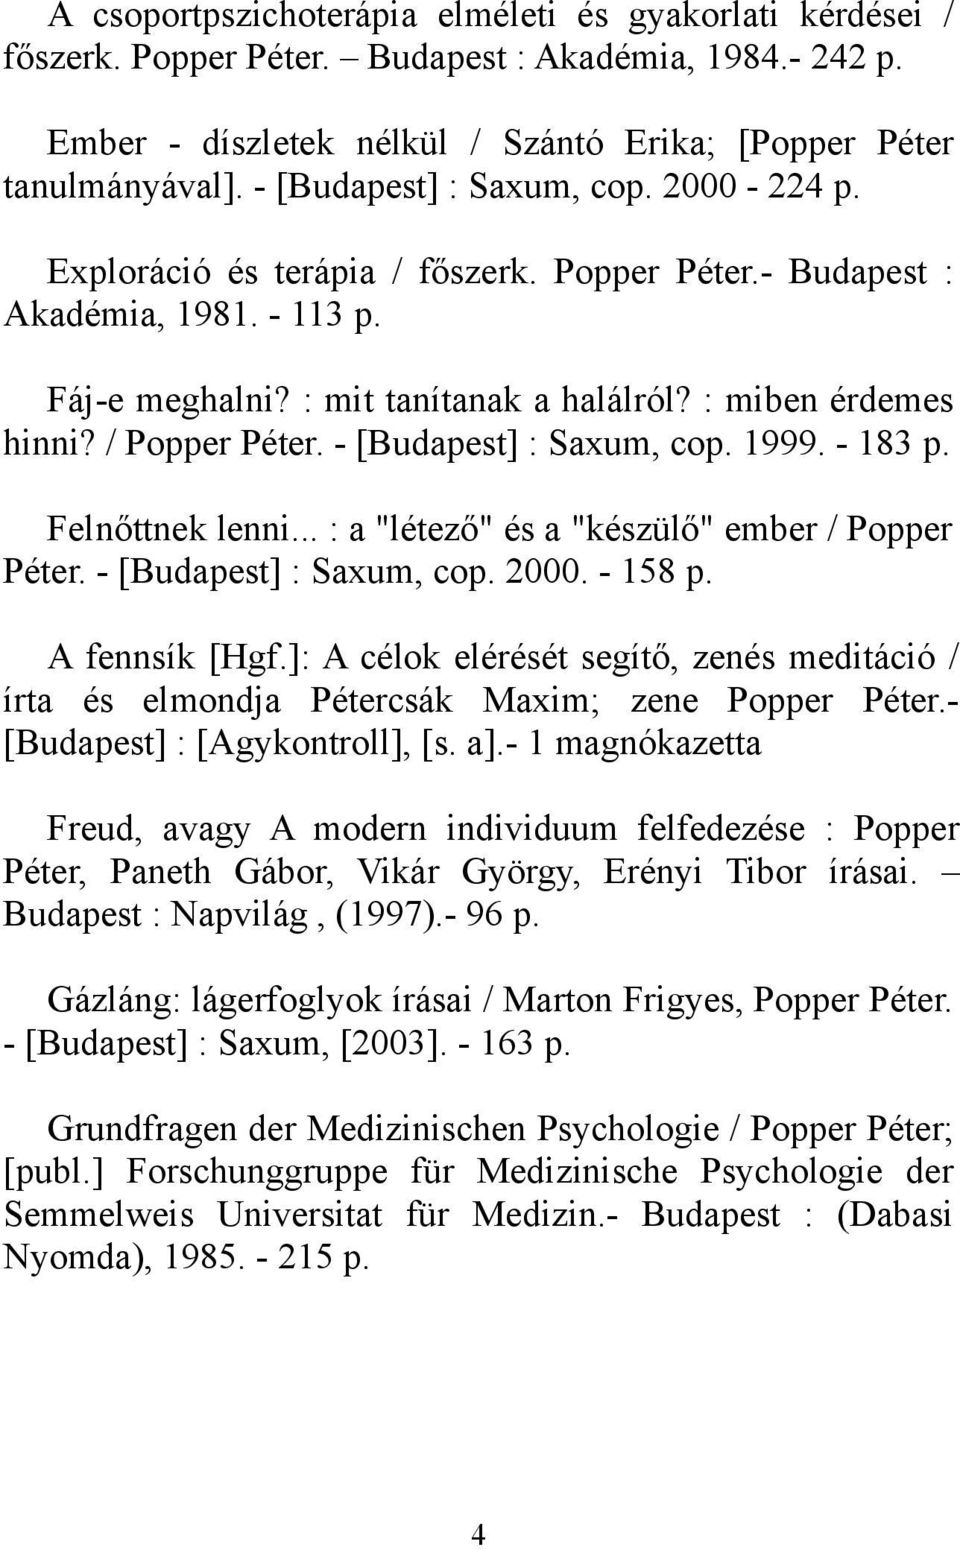 / Popper Péter. - [Budapest] : Saxum, cop. 1999. - 183 p. Felnőttnek lenni... : a "létező" és a "készülő" ember / Popper Péter. - [Budapest] : Saxum, cop. 2000. - 158 p. A fennsík [Hgf.